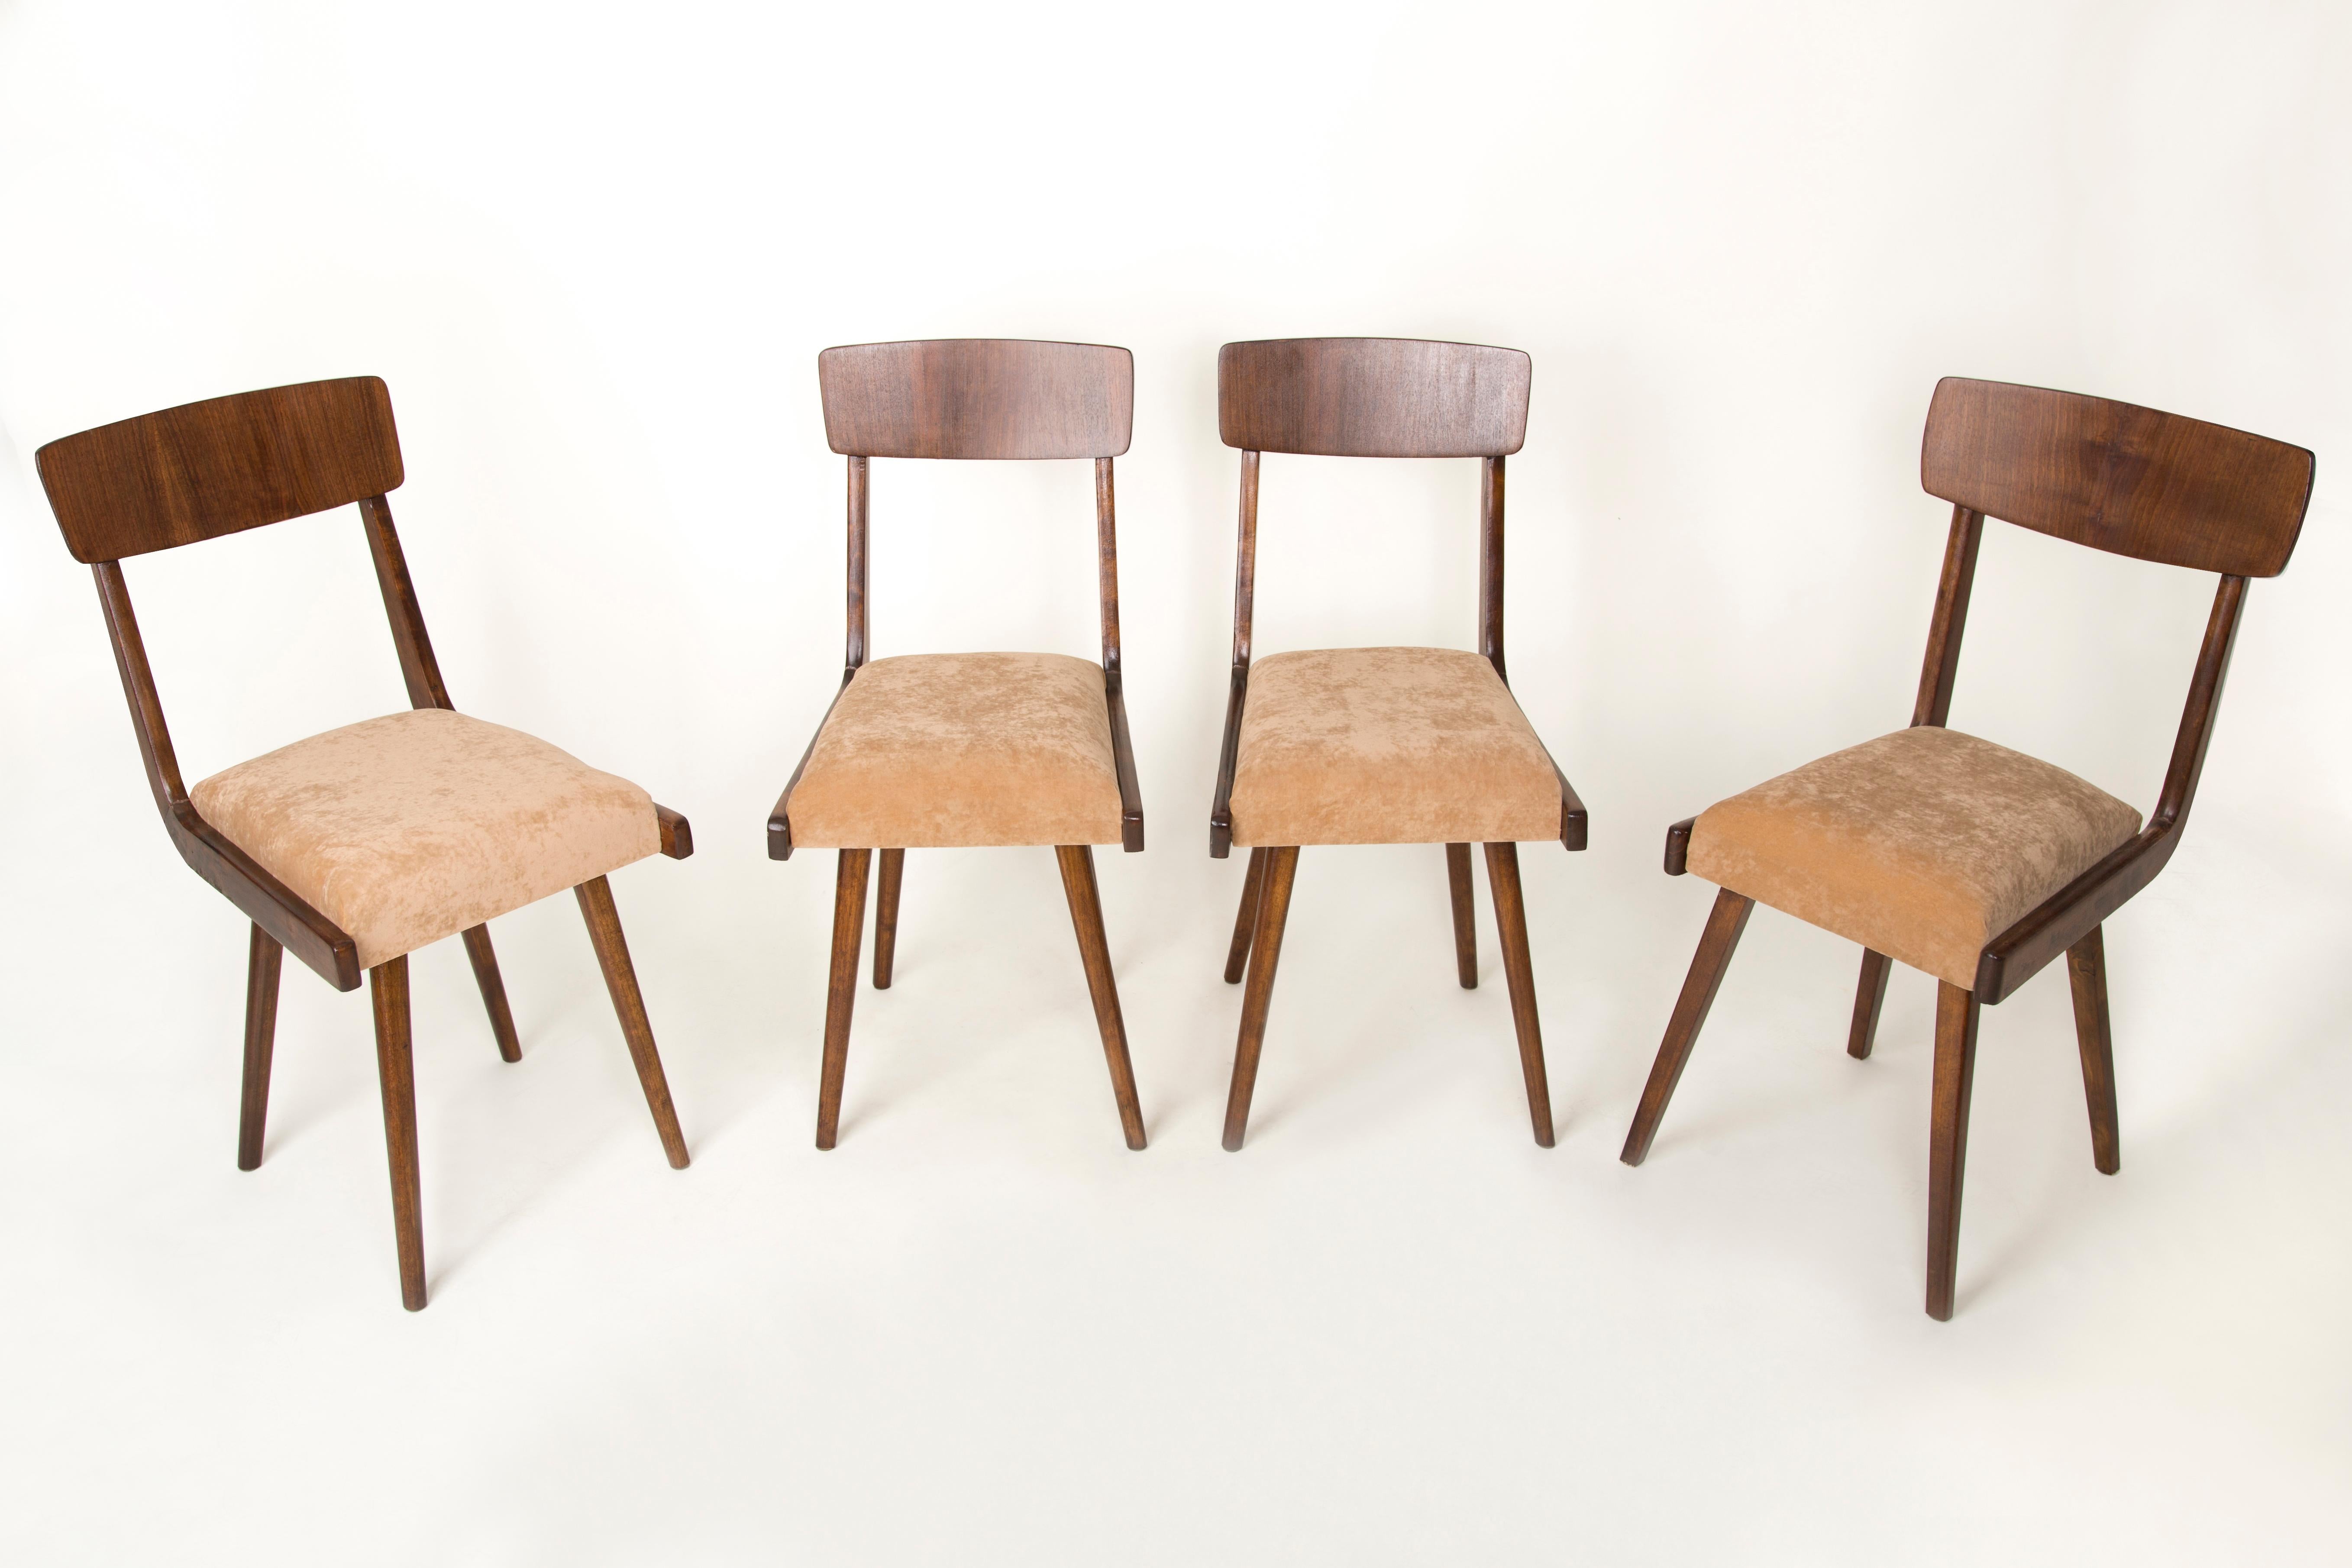 Stühle entworfen von Prof. Rajmund Halas. Sie wurden aus Buchenholz hergestellt. Sie wurden komplett neu gepolstert, die Holzarbeiten wurden aufgefrischt. Die Sitze waren mit beigem, weichem Samt bezogen. Sie sind stabil und sehr formschön. Die